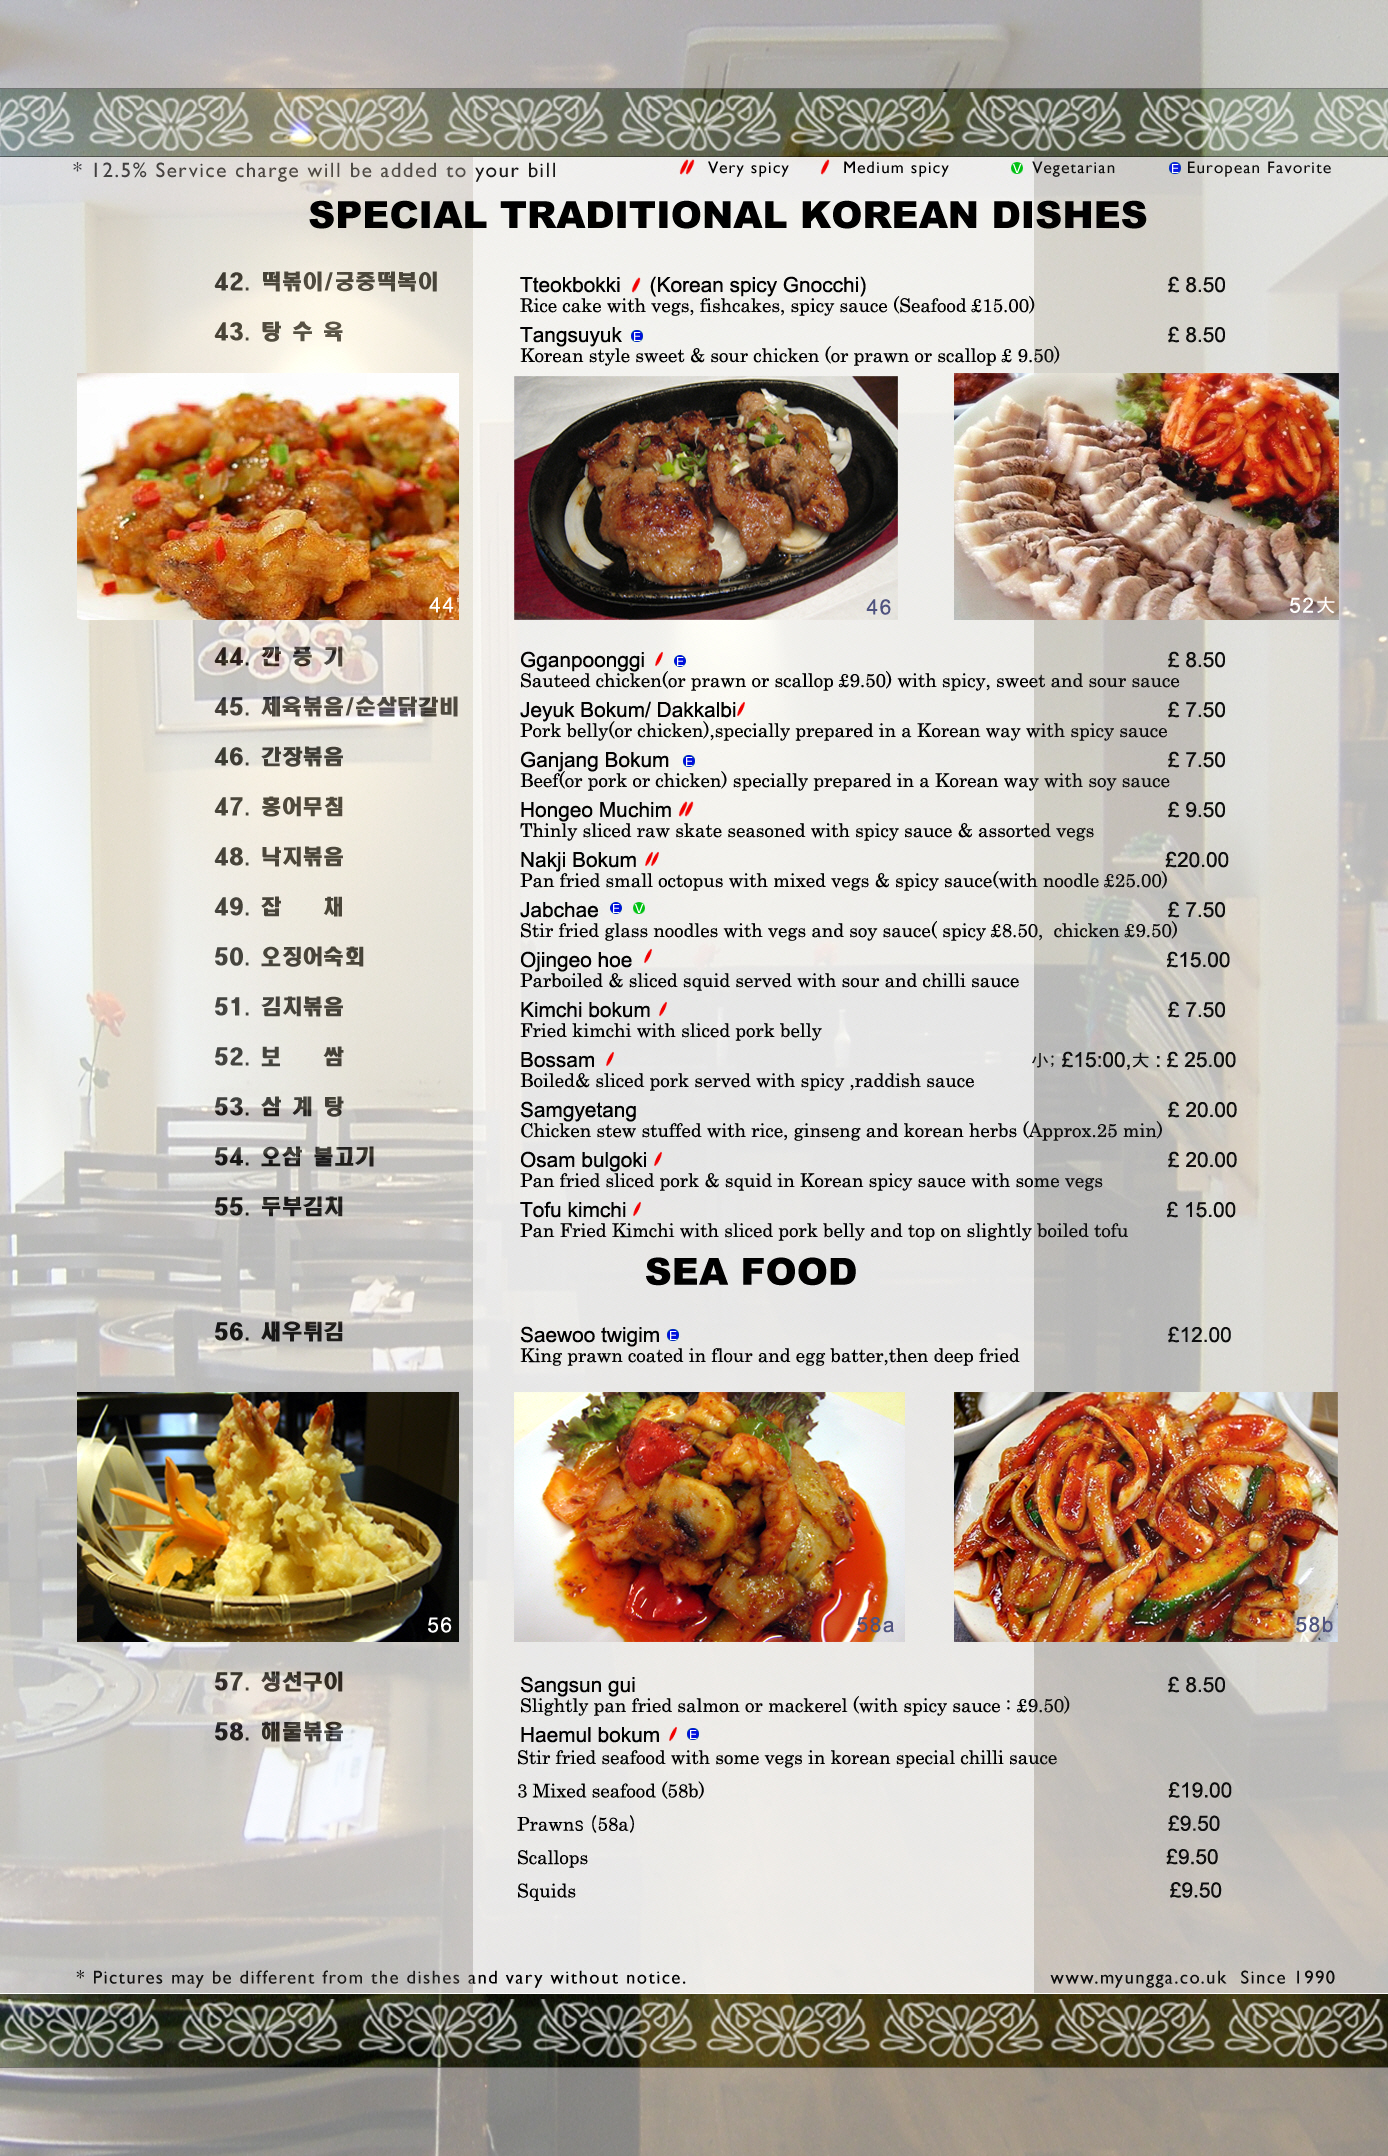 Myungga restaurant Menu,What kinds of Korean foods in here, Korean